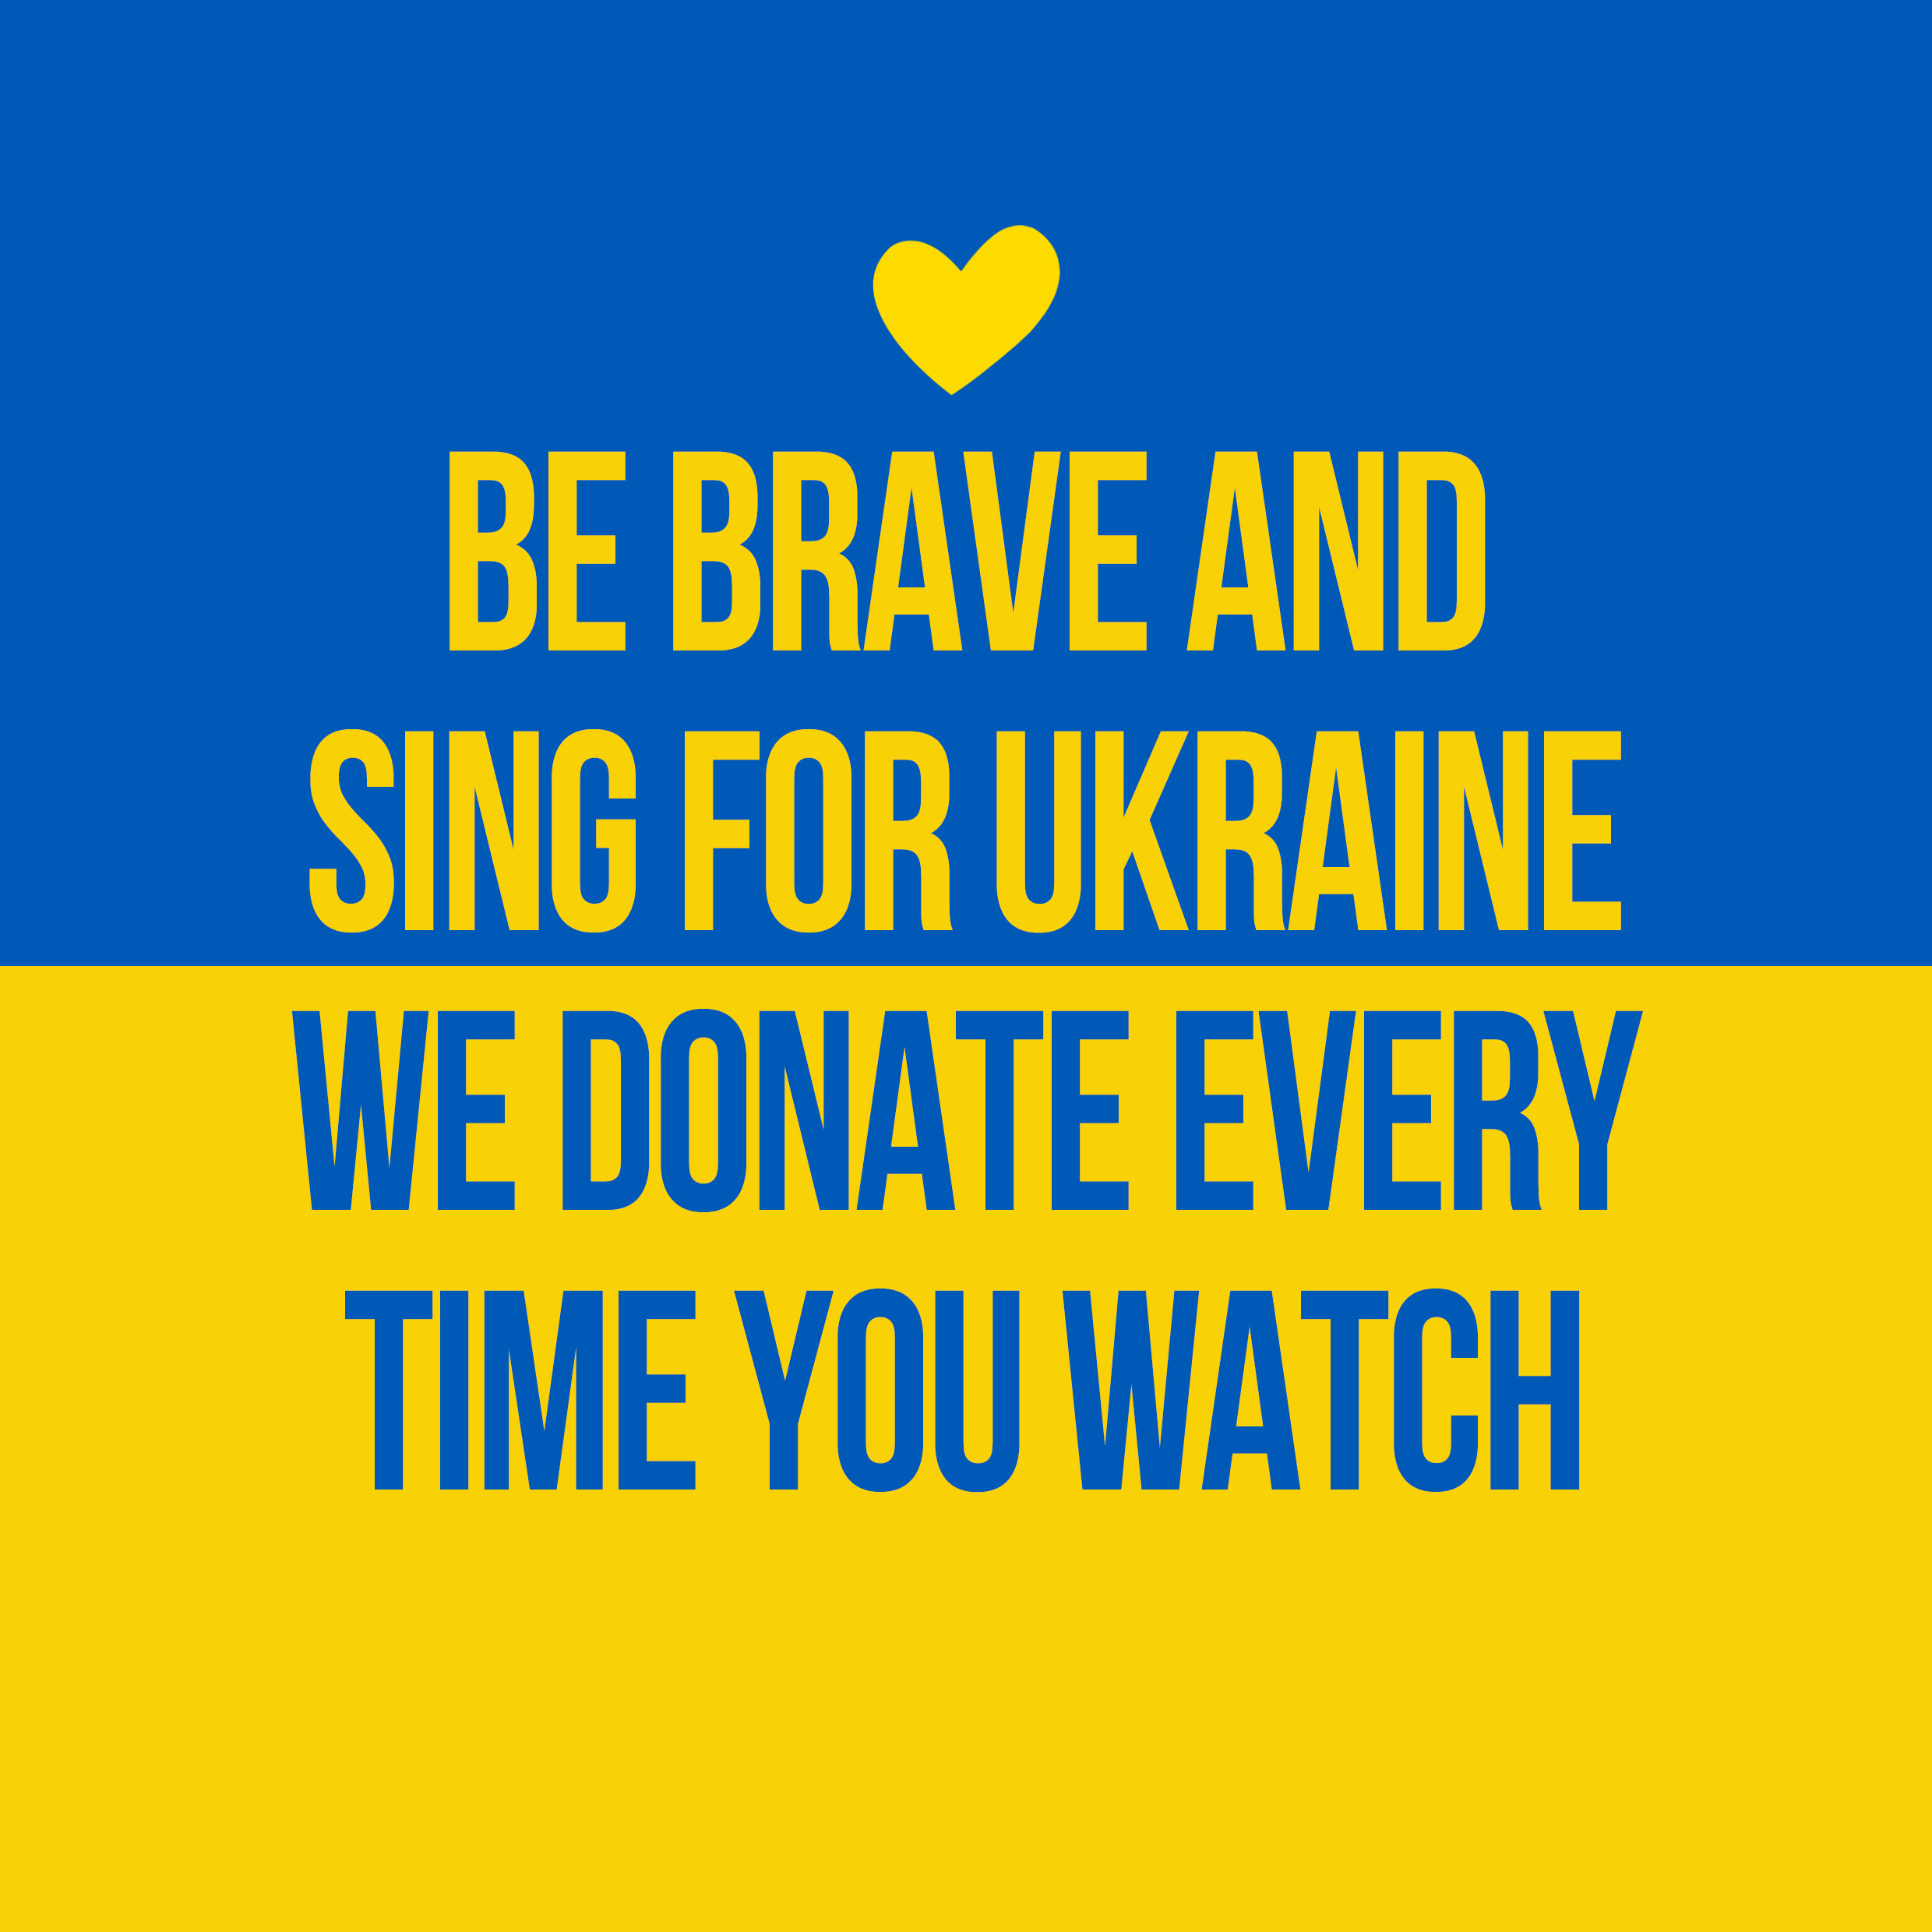 MO3GI GROUP залучає YouTube-аудиторію артистів допомагати українцям